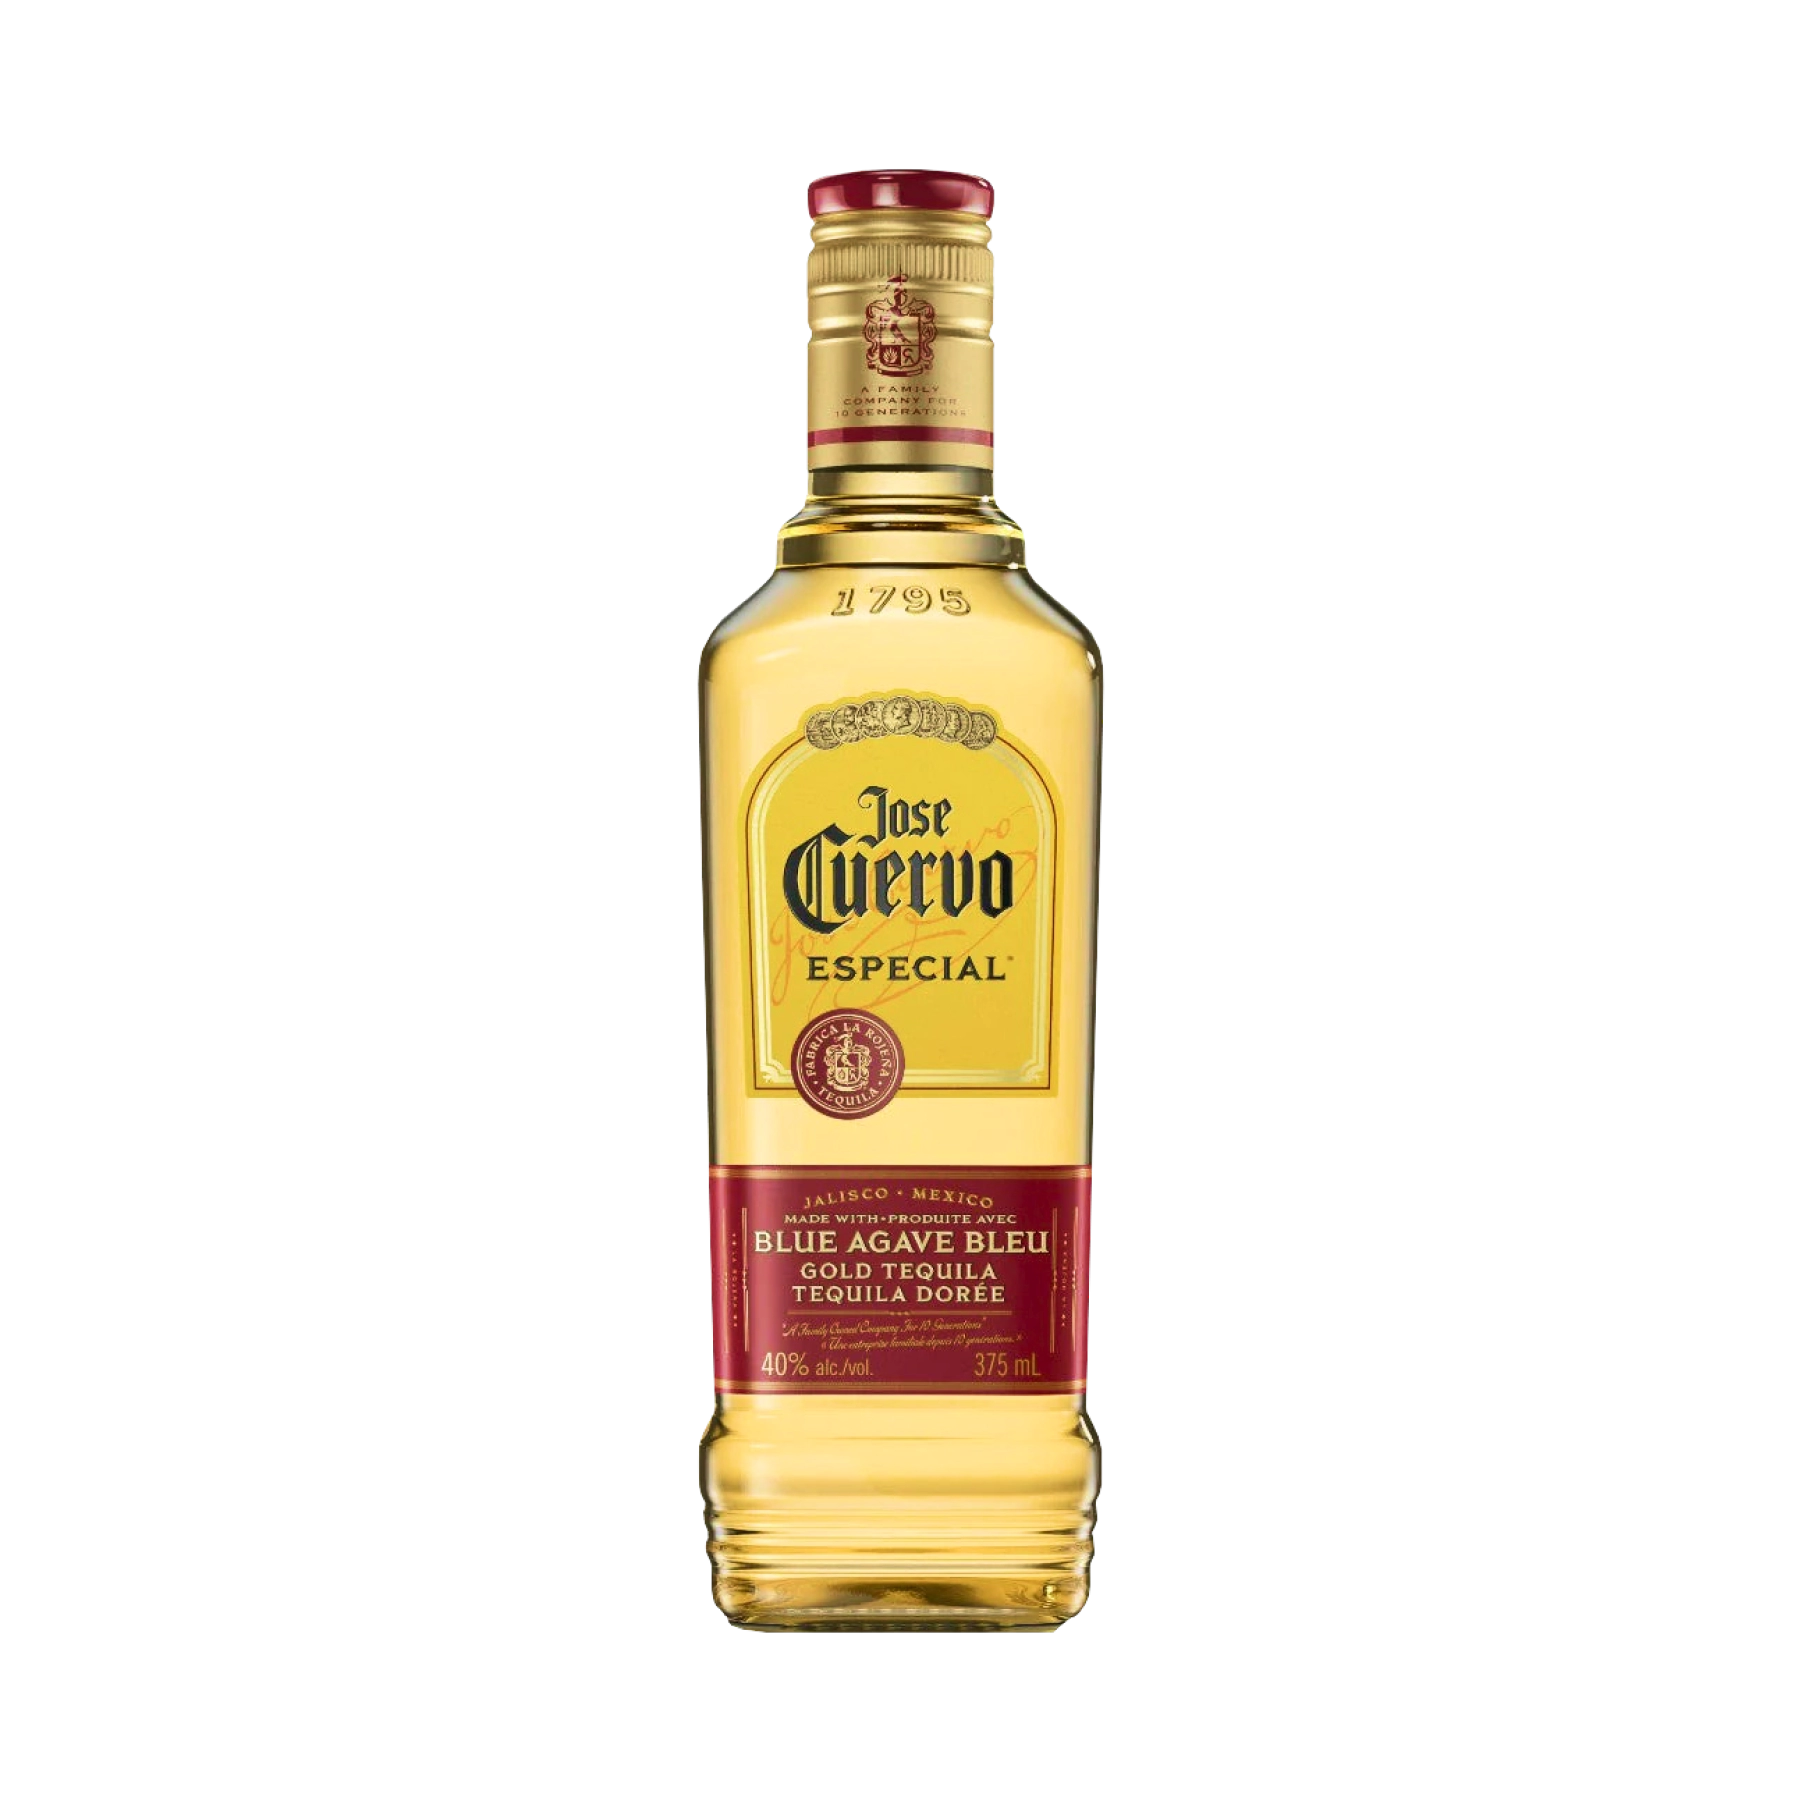 Rượu Tequila Jose Cuervo Especial Reposado 375ml